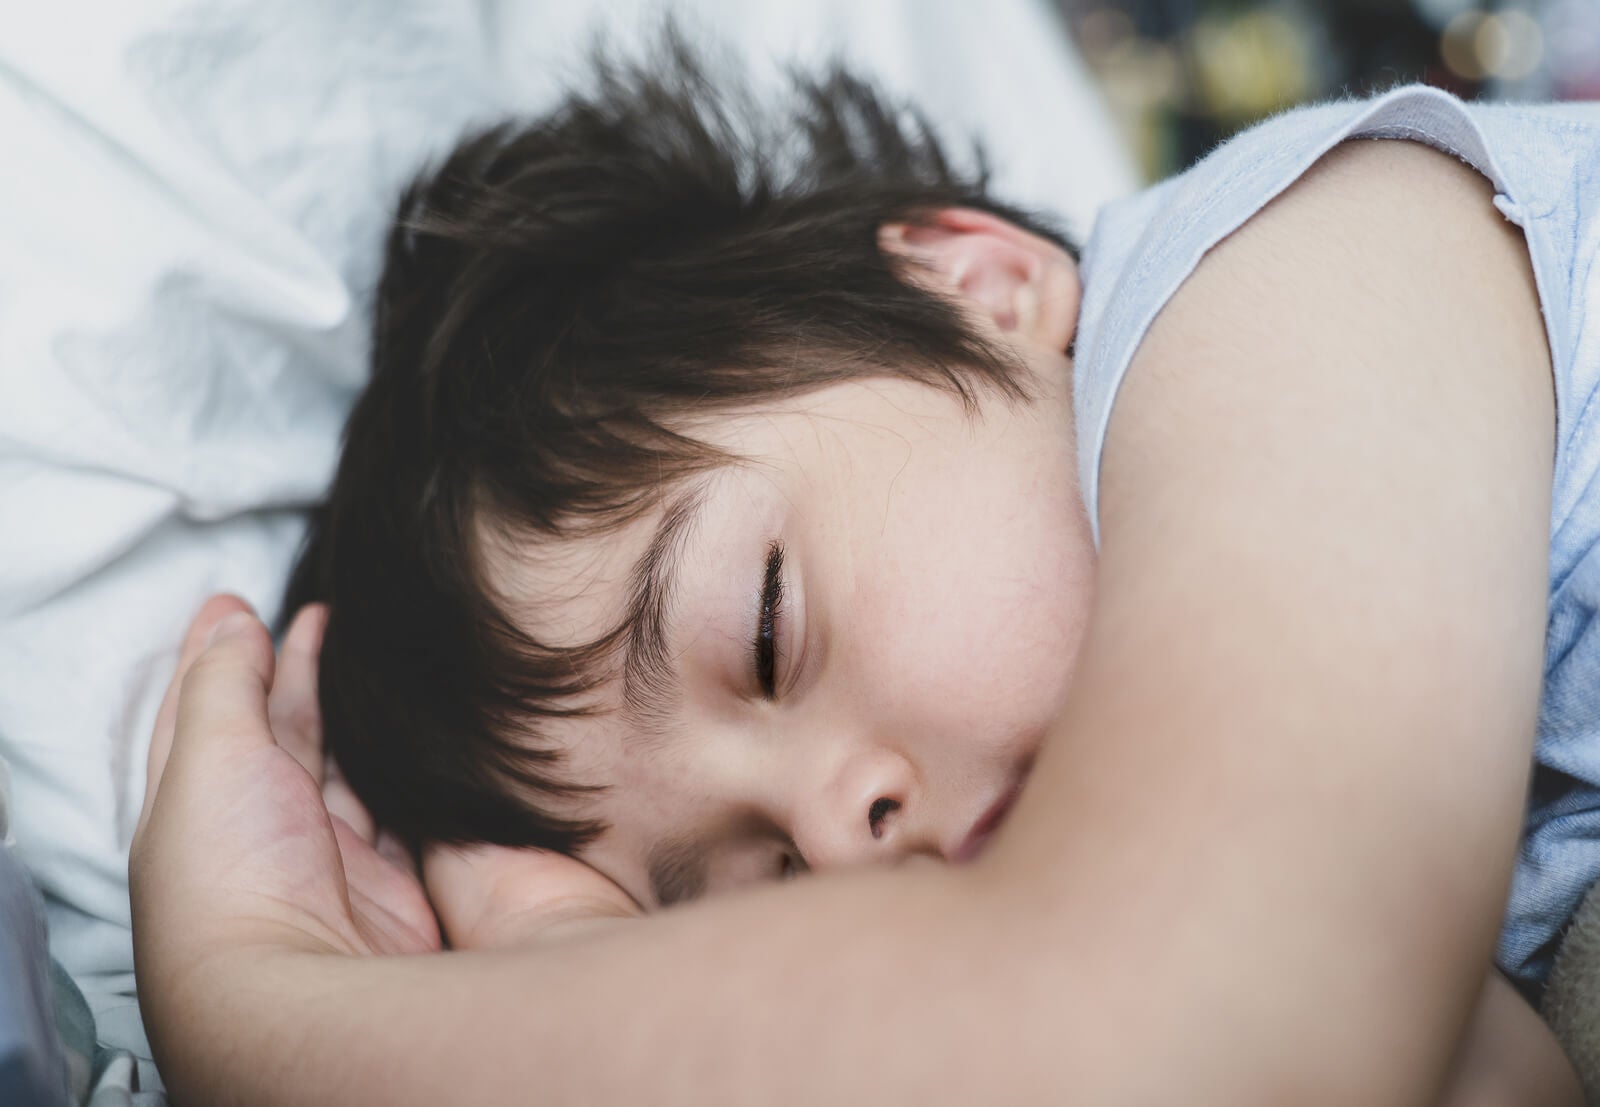 Niño que duerme bien gracias a imágenes guiadas.